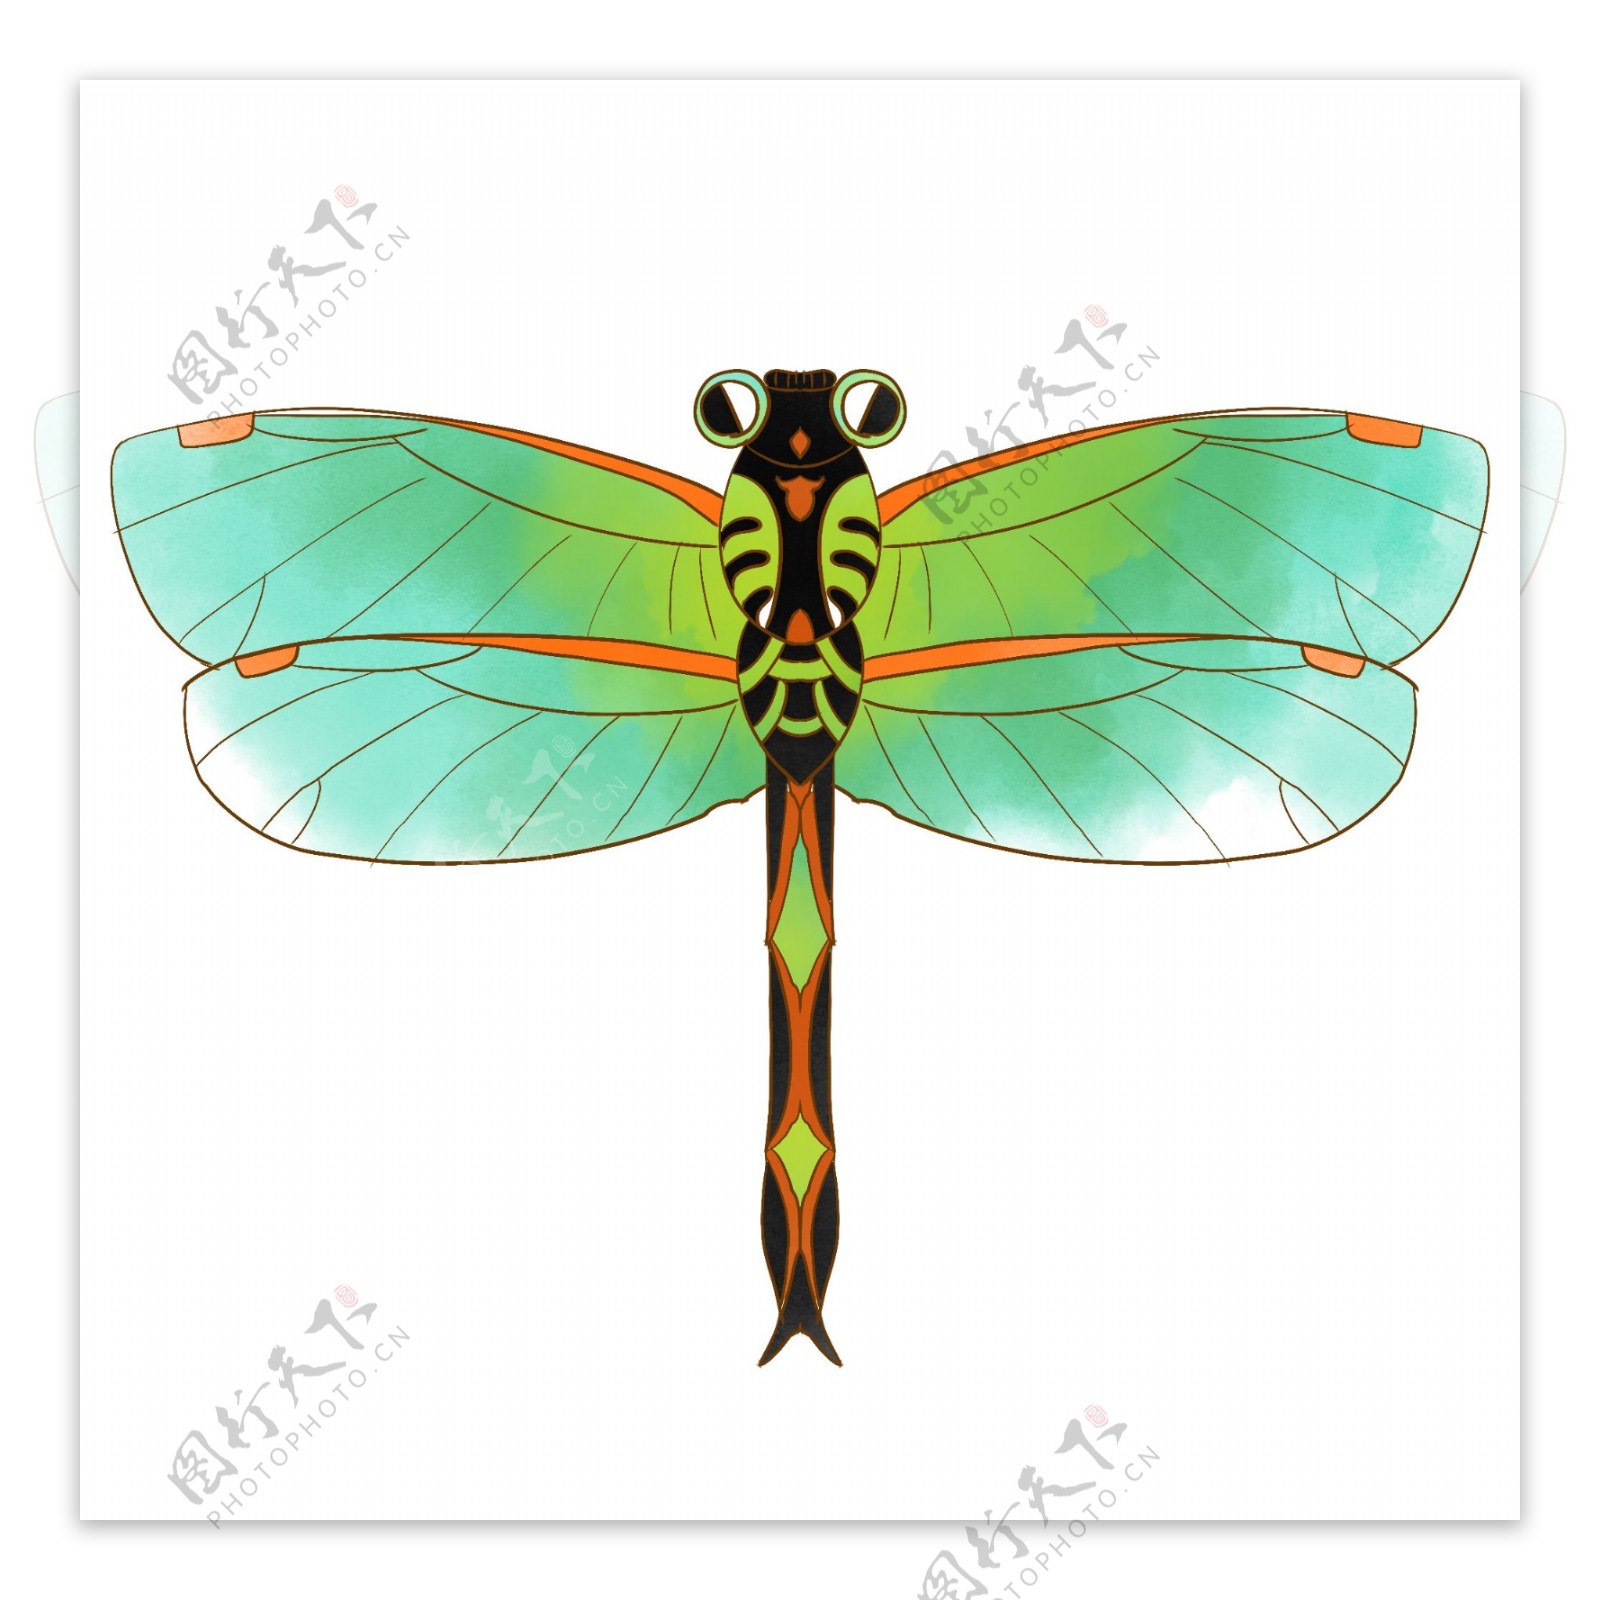 漂亮的蜻蜓风筝插画